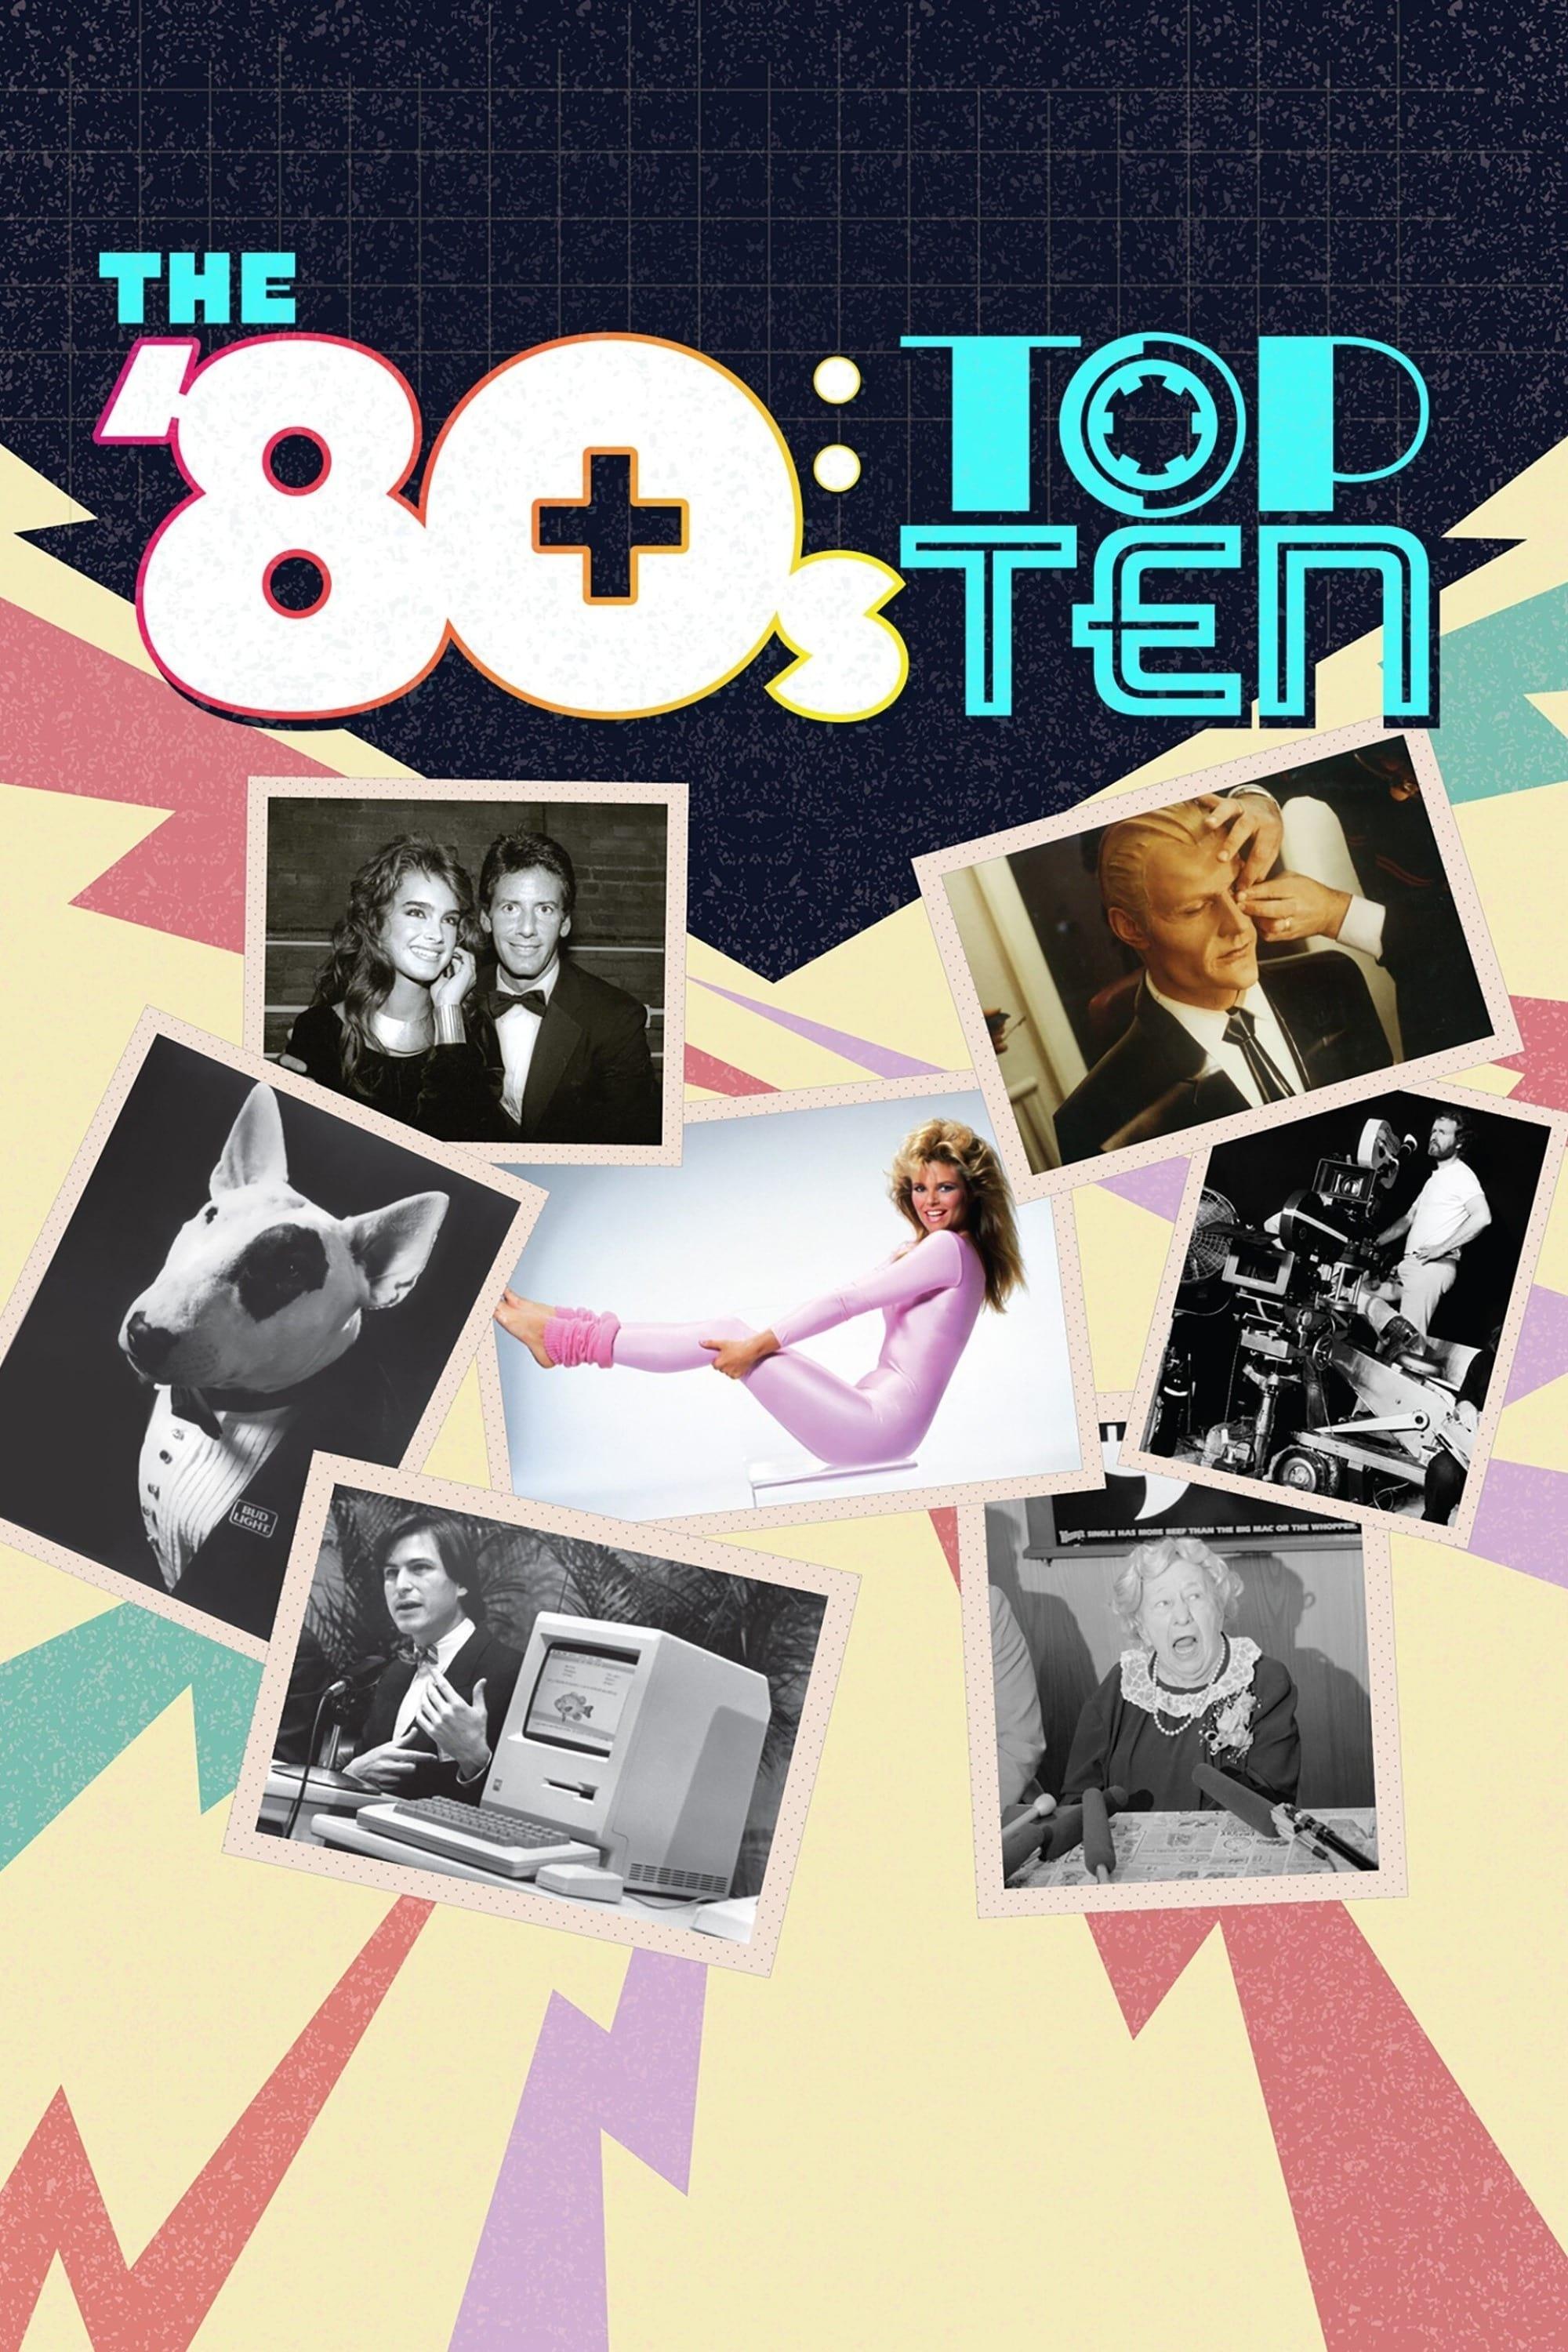 The '80s: Top Ten poster